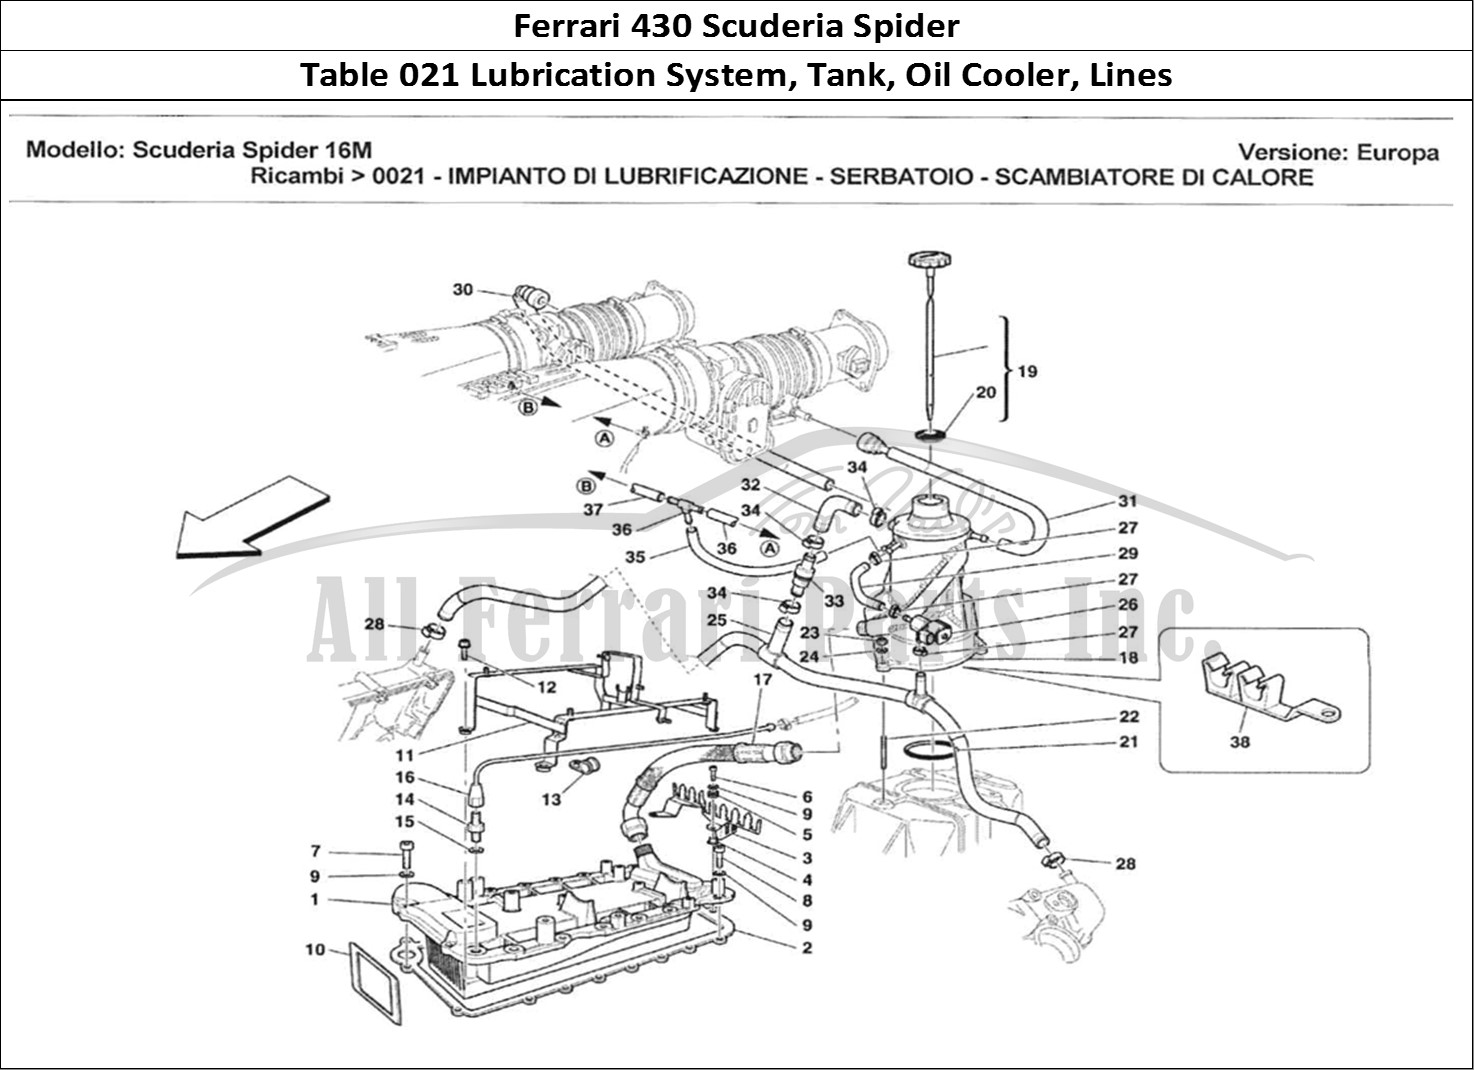 Ferrari Parts Ferrari 430 Scuderia Spider 16M Page 021 Impianto di Lubrificazion